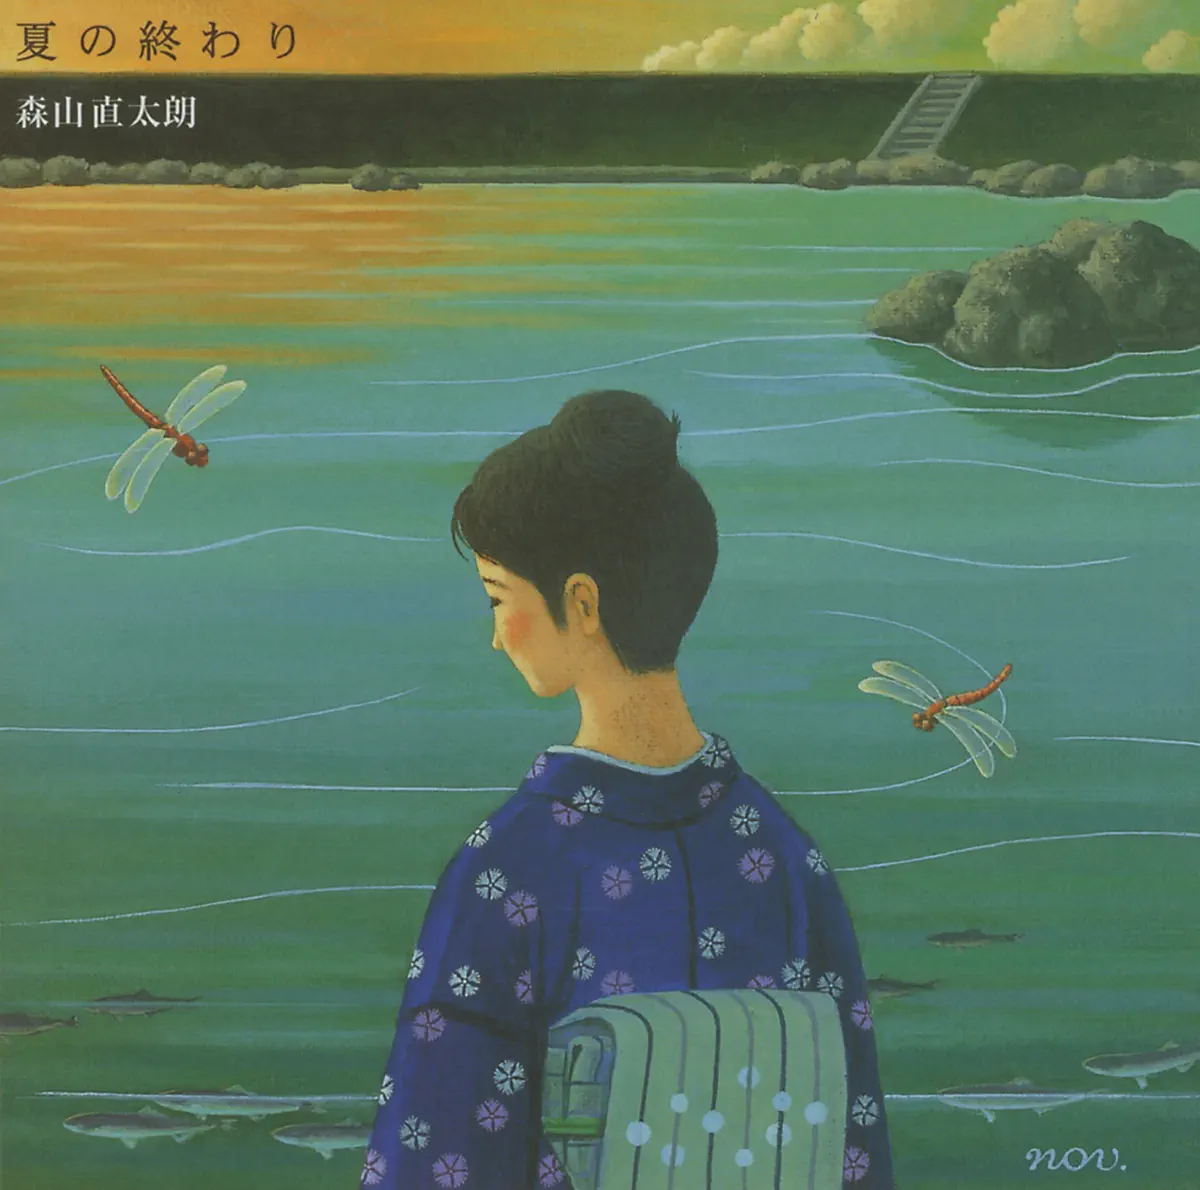 森山直太朗 - 夏の终わり - Single (2013) [iTunes Plus AAC M4A]-新房子